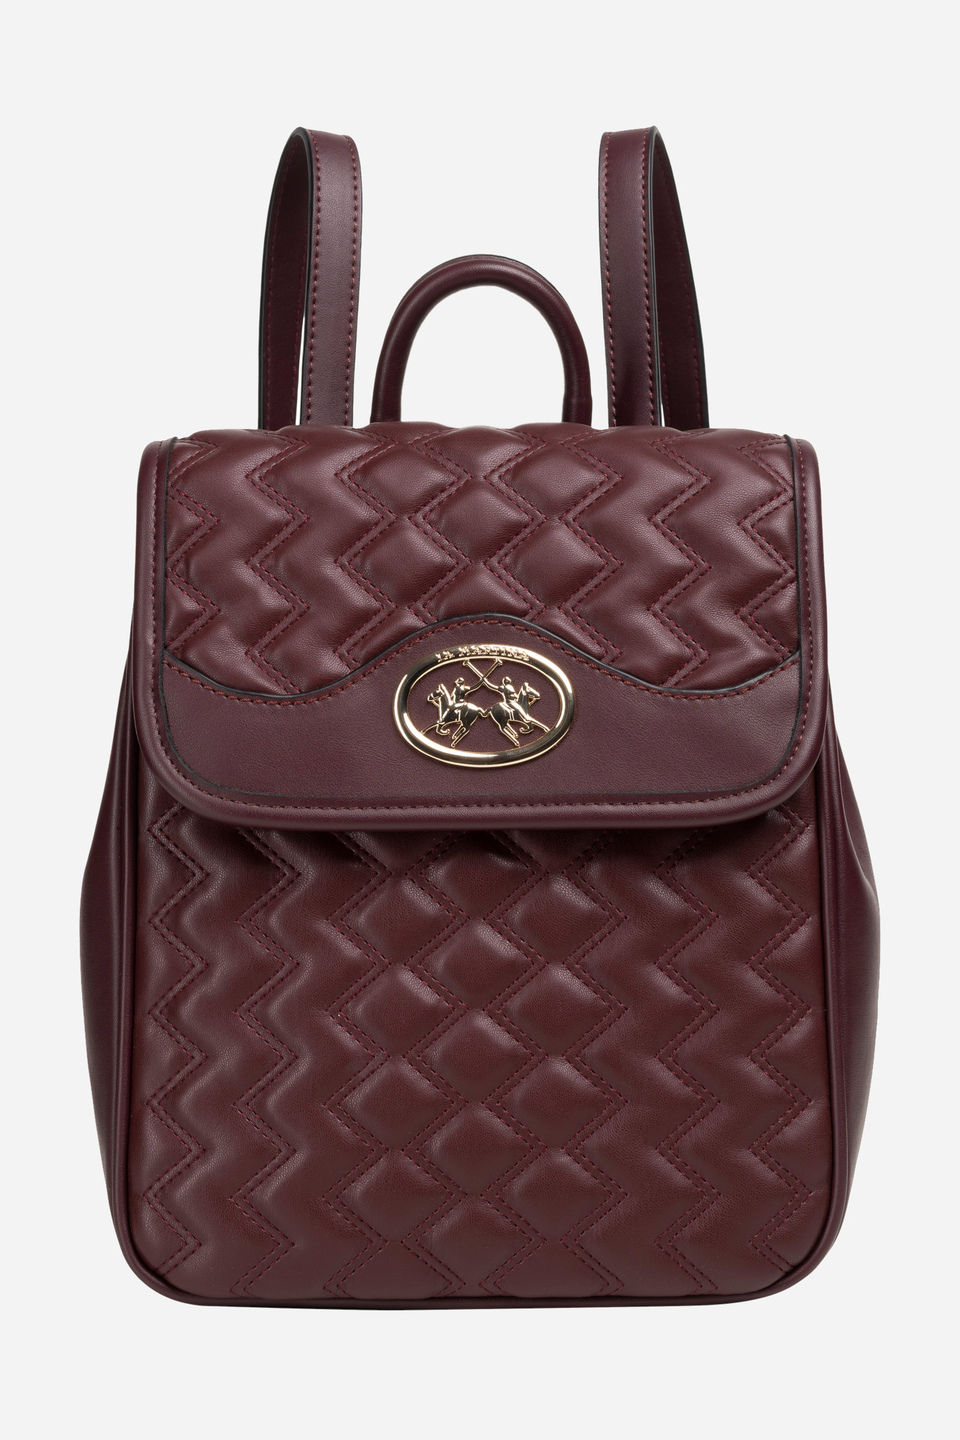 Backpack solid color burgundy fabric pu - Isabel | La Martina - Official Online Shop